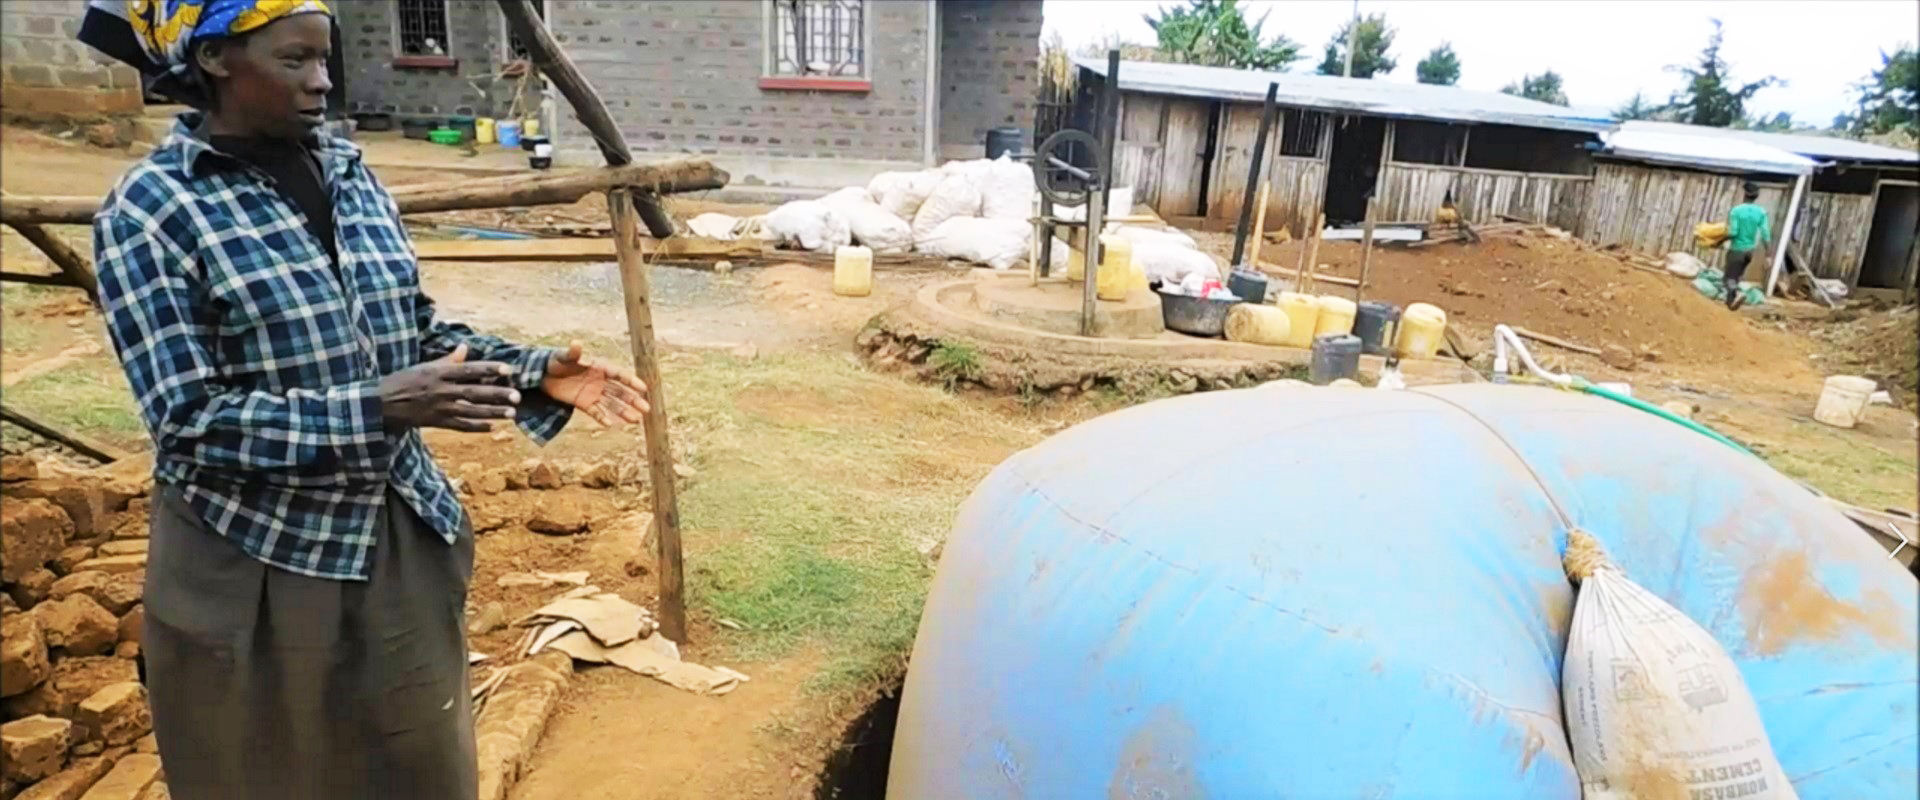 hanna biogas success story Kenya Mani Tese 2019